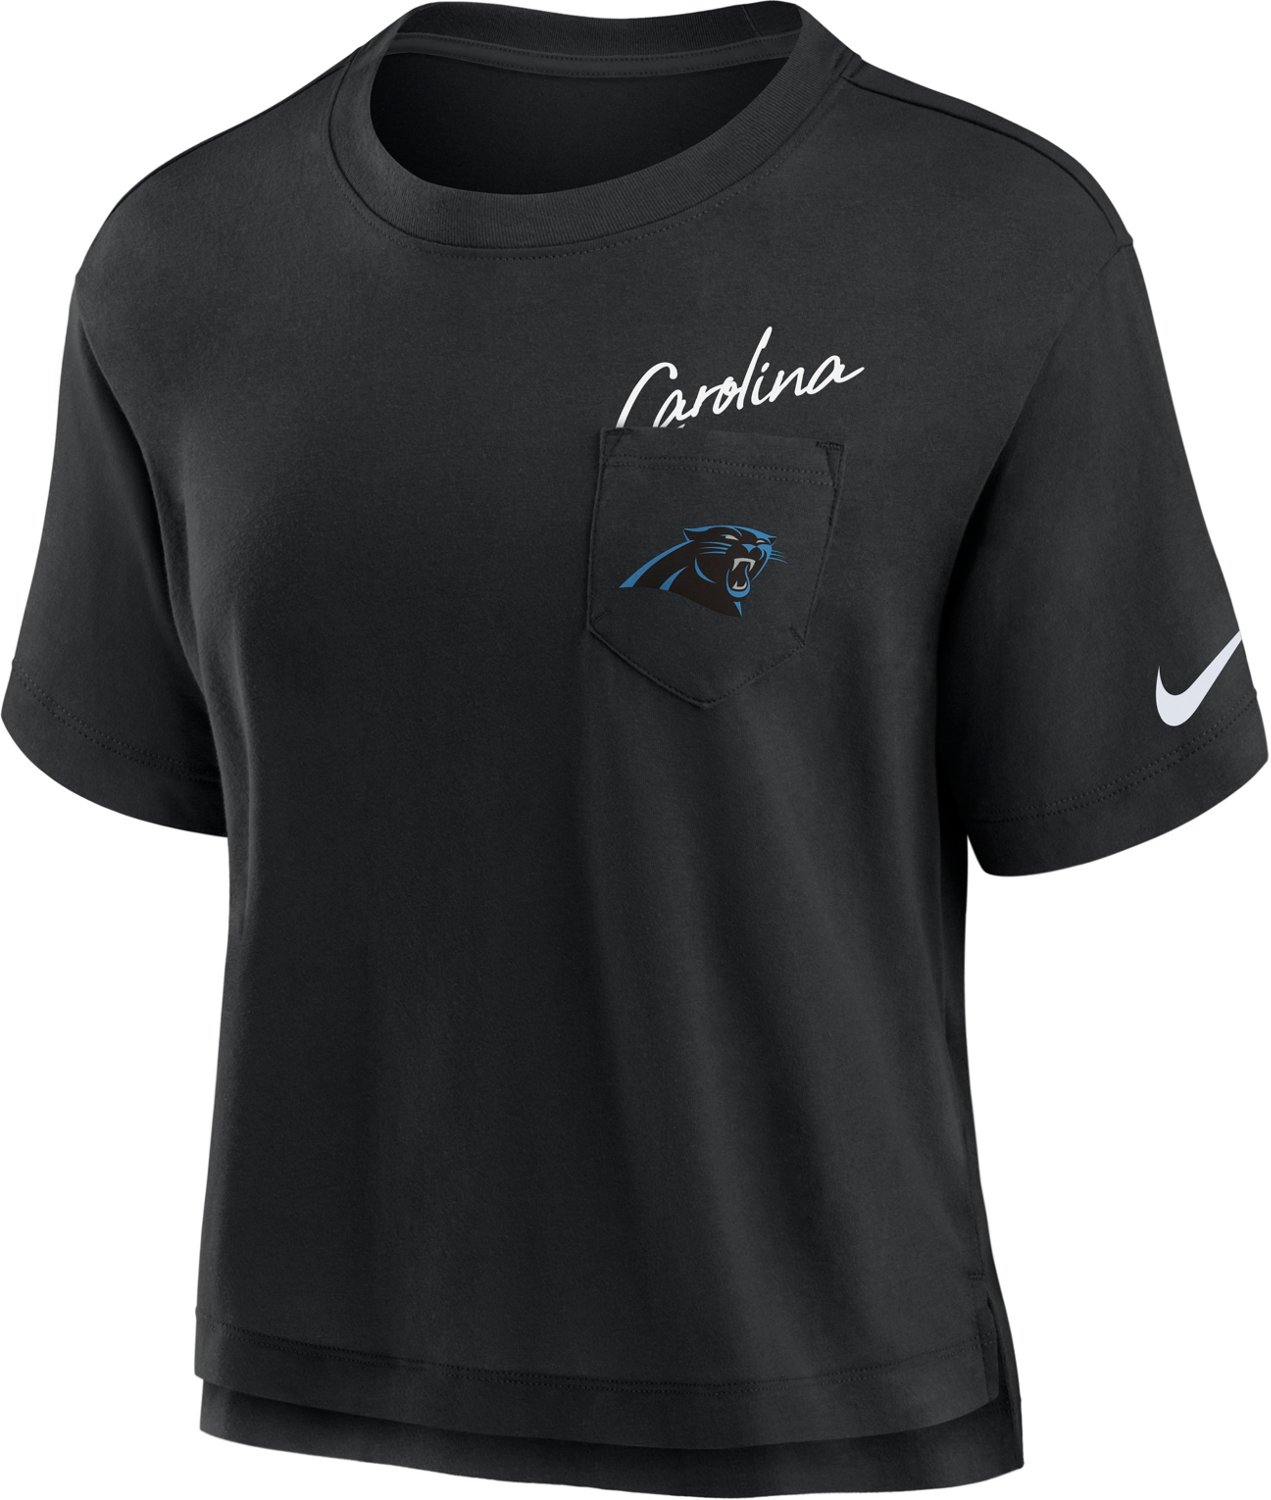 Carolina Panthers Official Shop  Panthers Jerseys, Apparel and